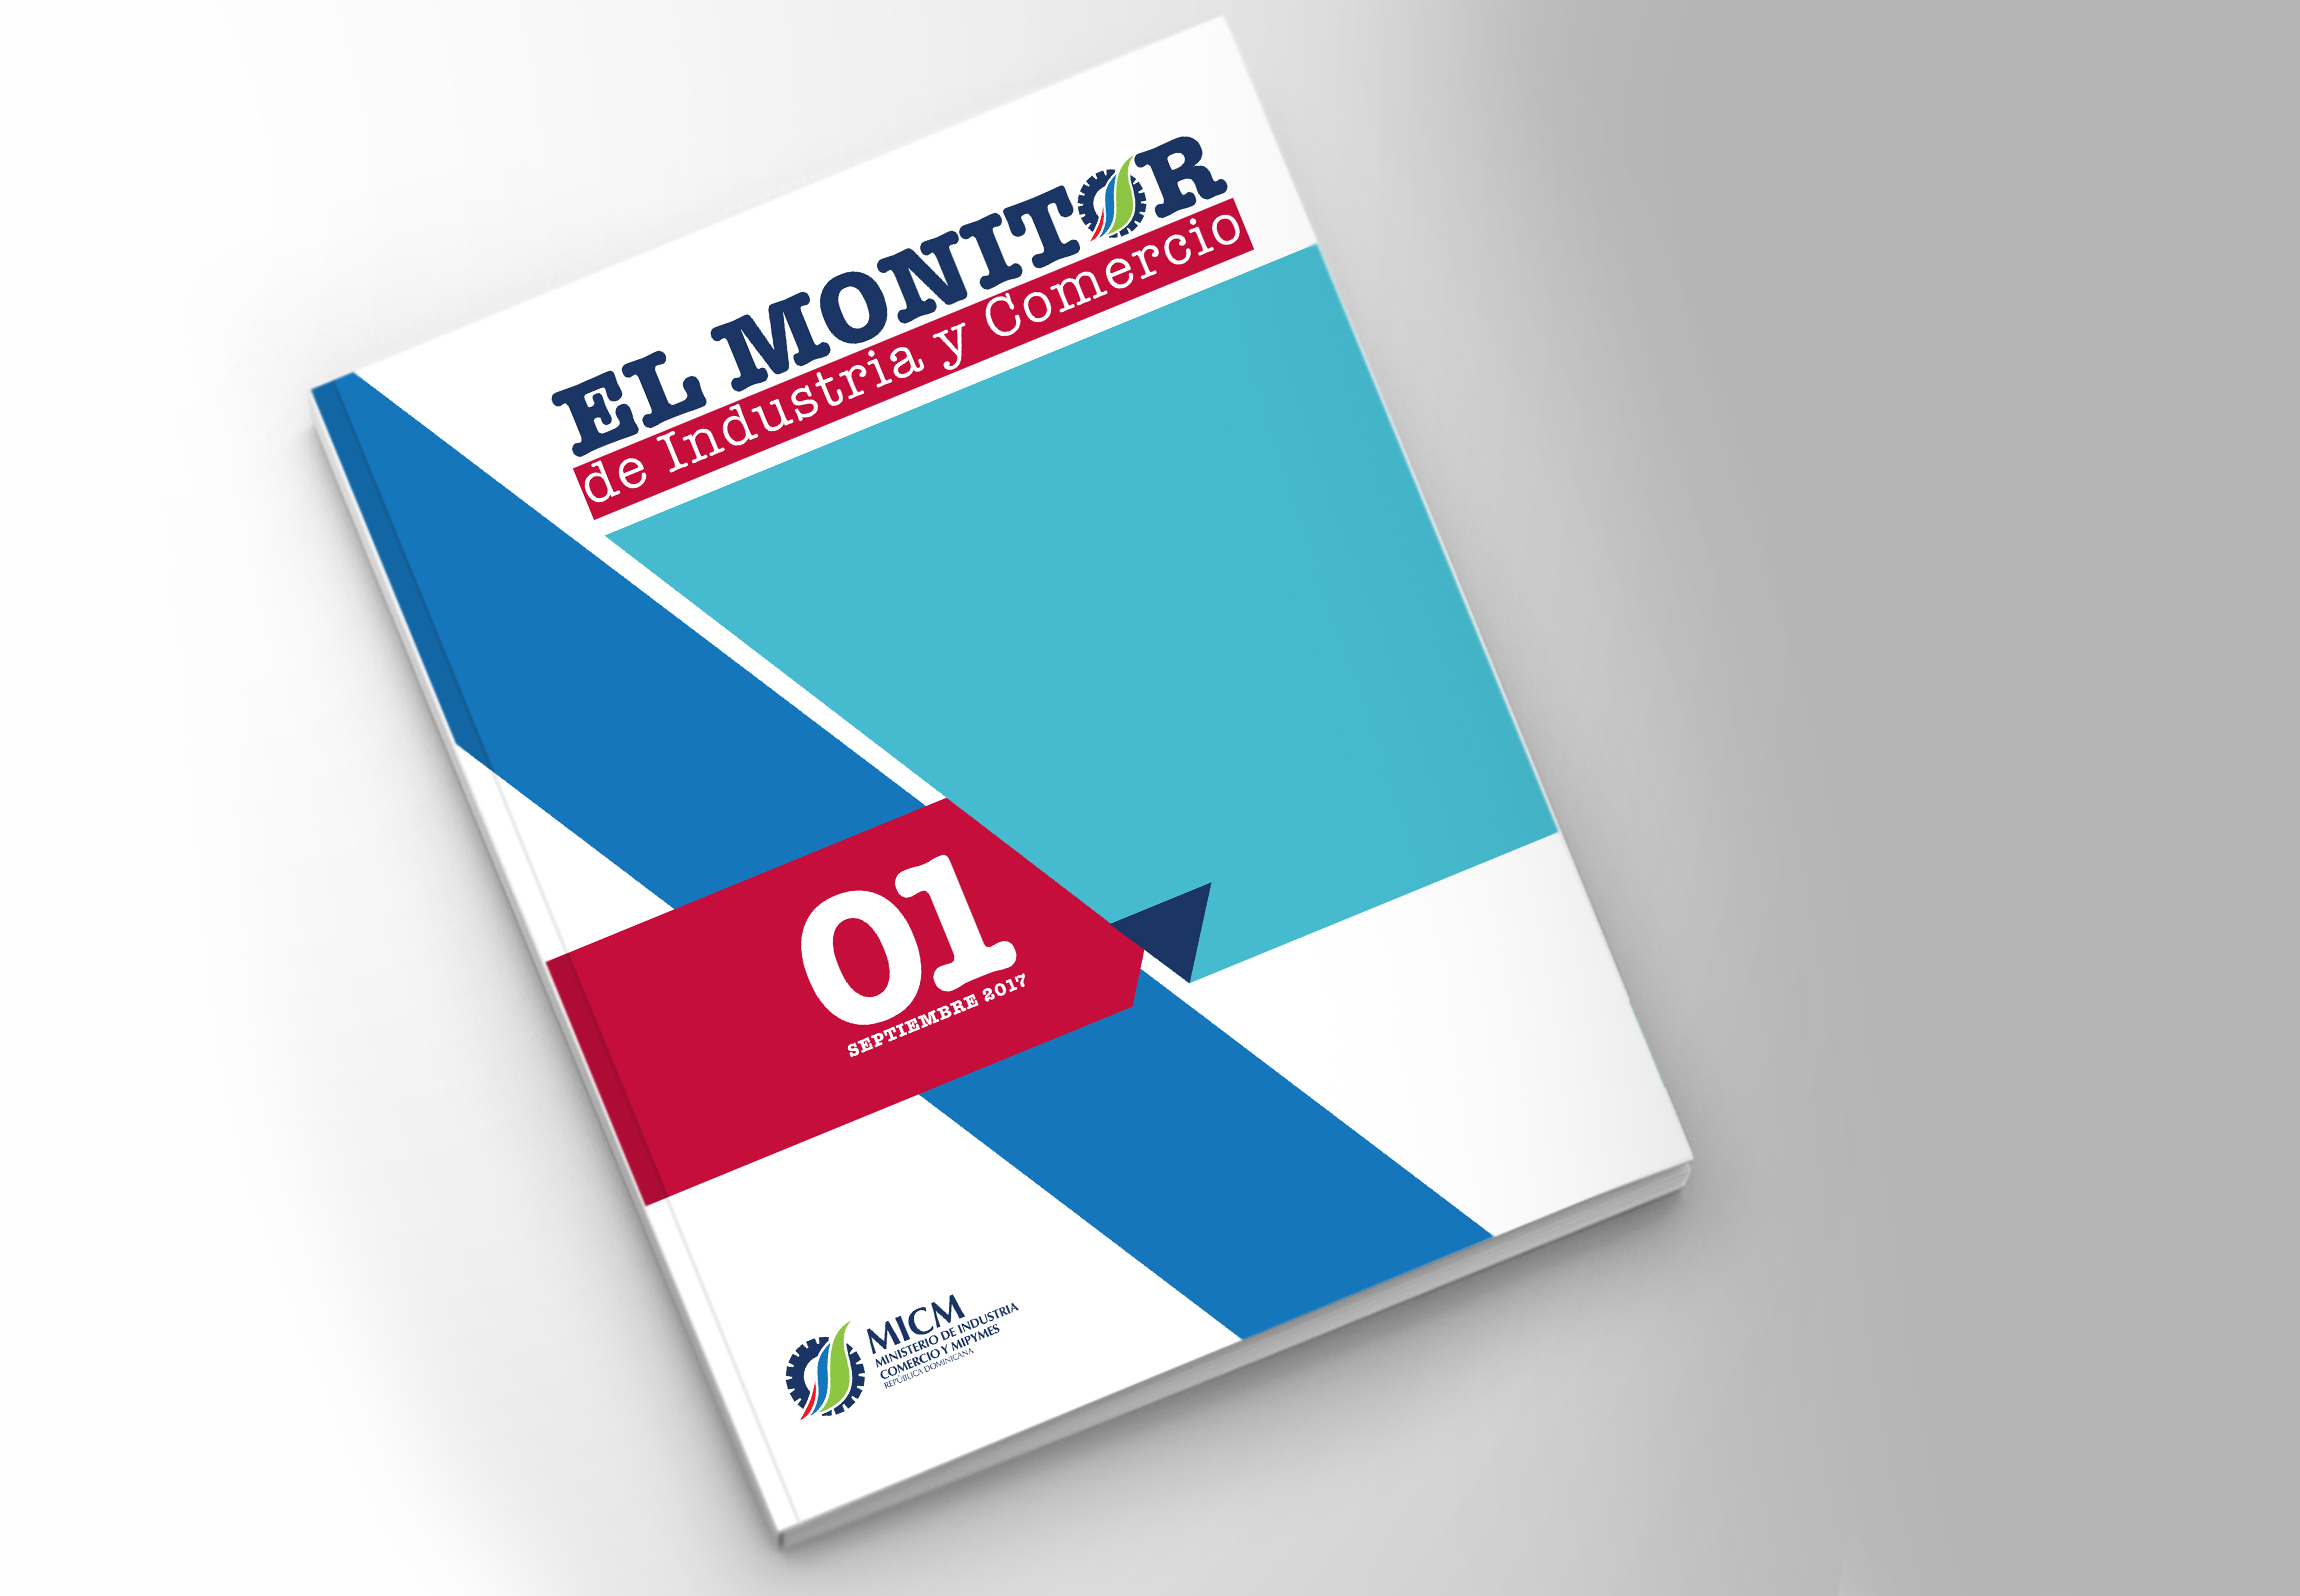  MICM lanza “El Monitor”, una publicación especializada en estadísticas de comercio e industria local y mundial